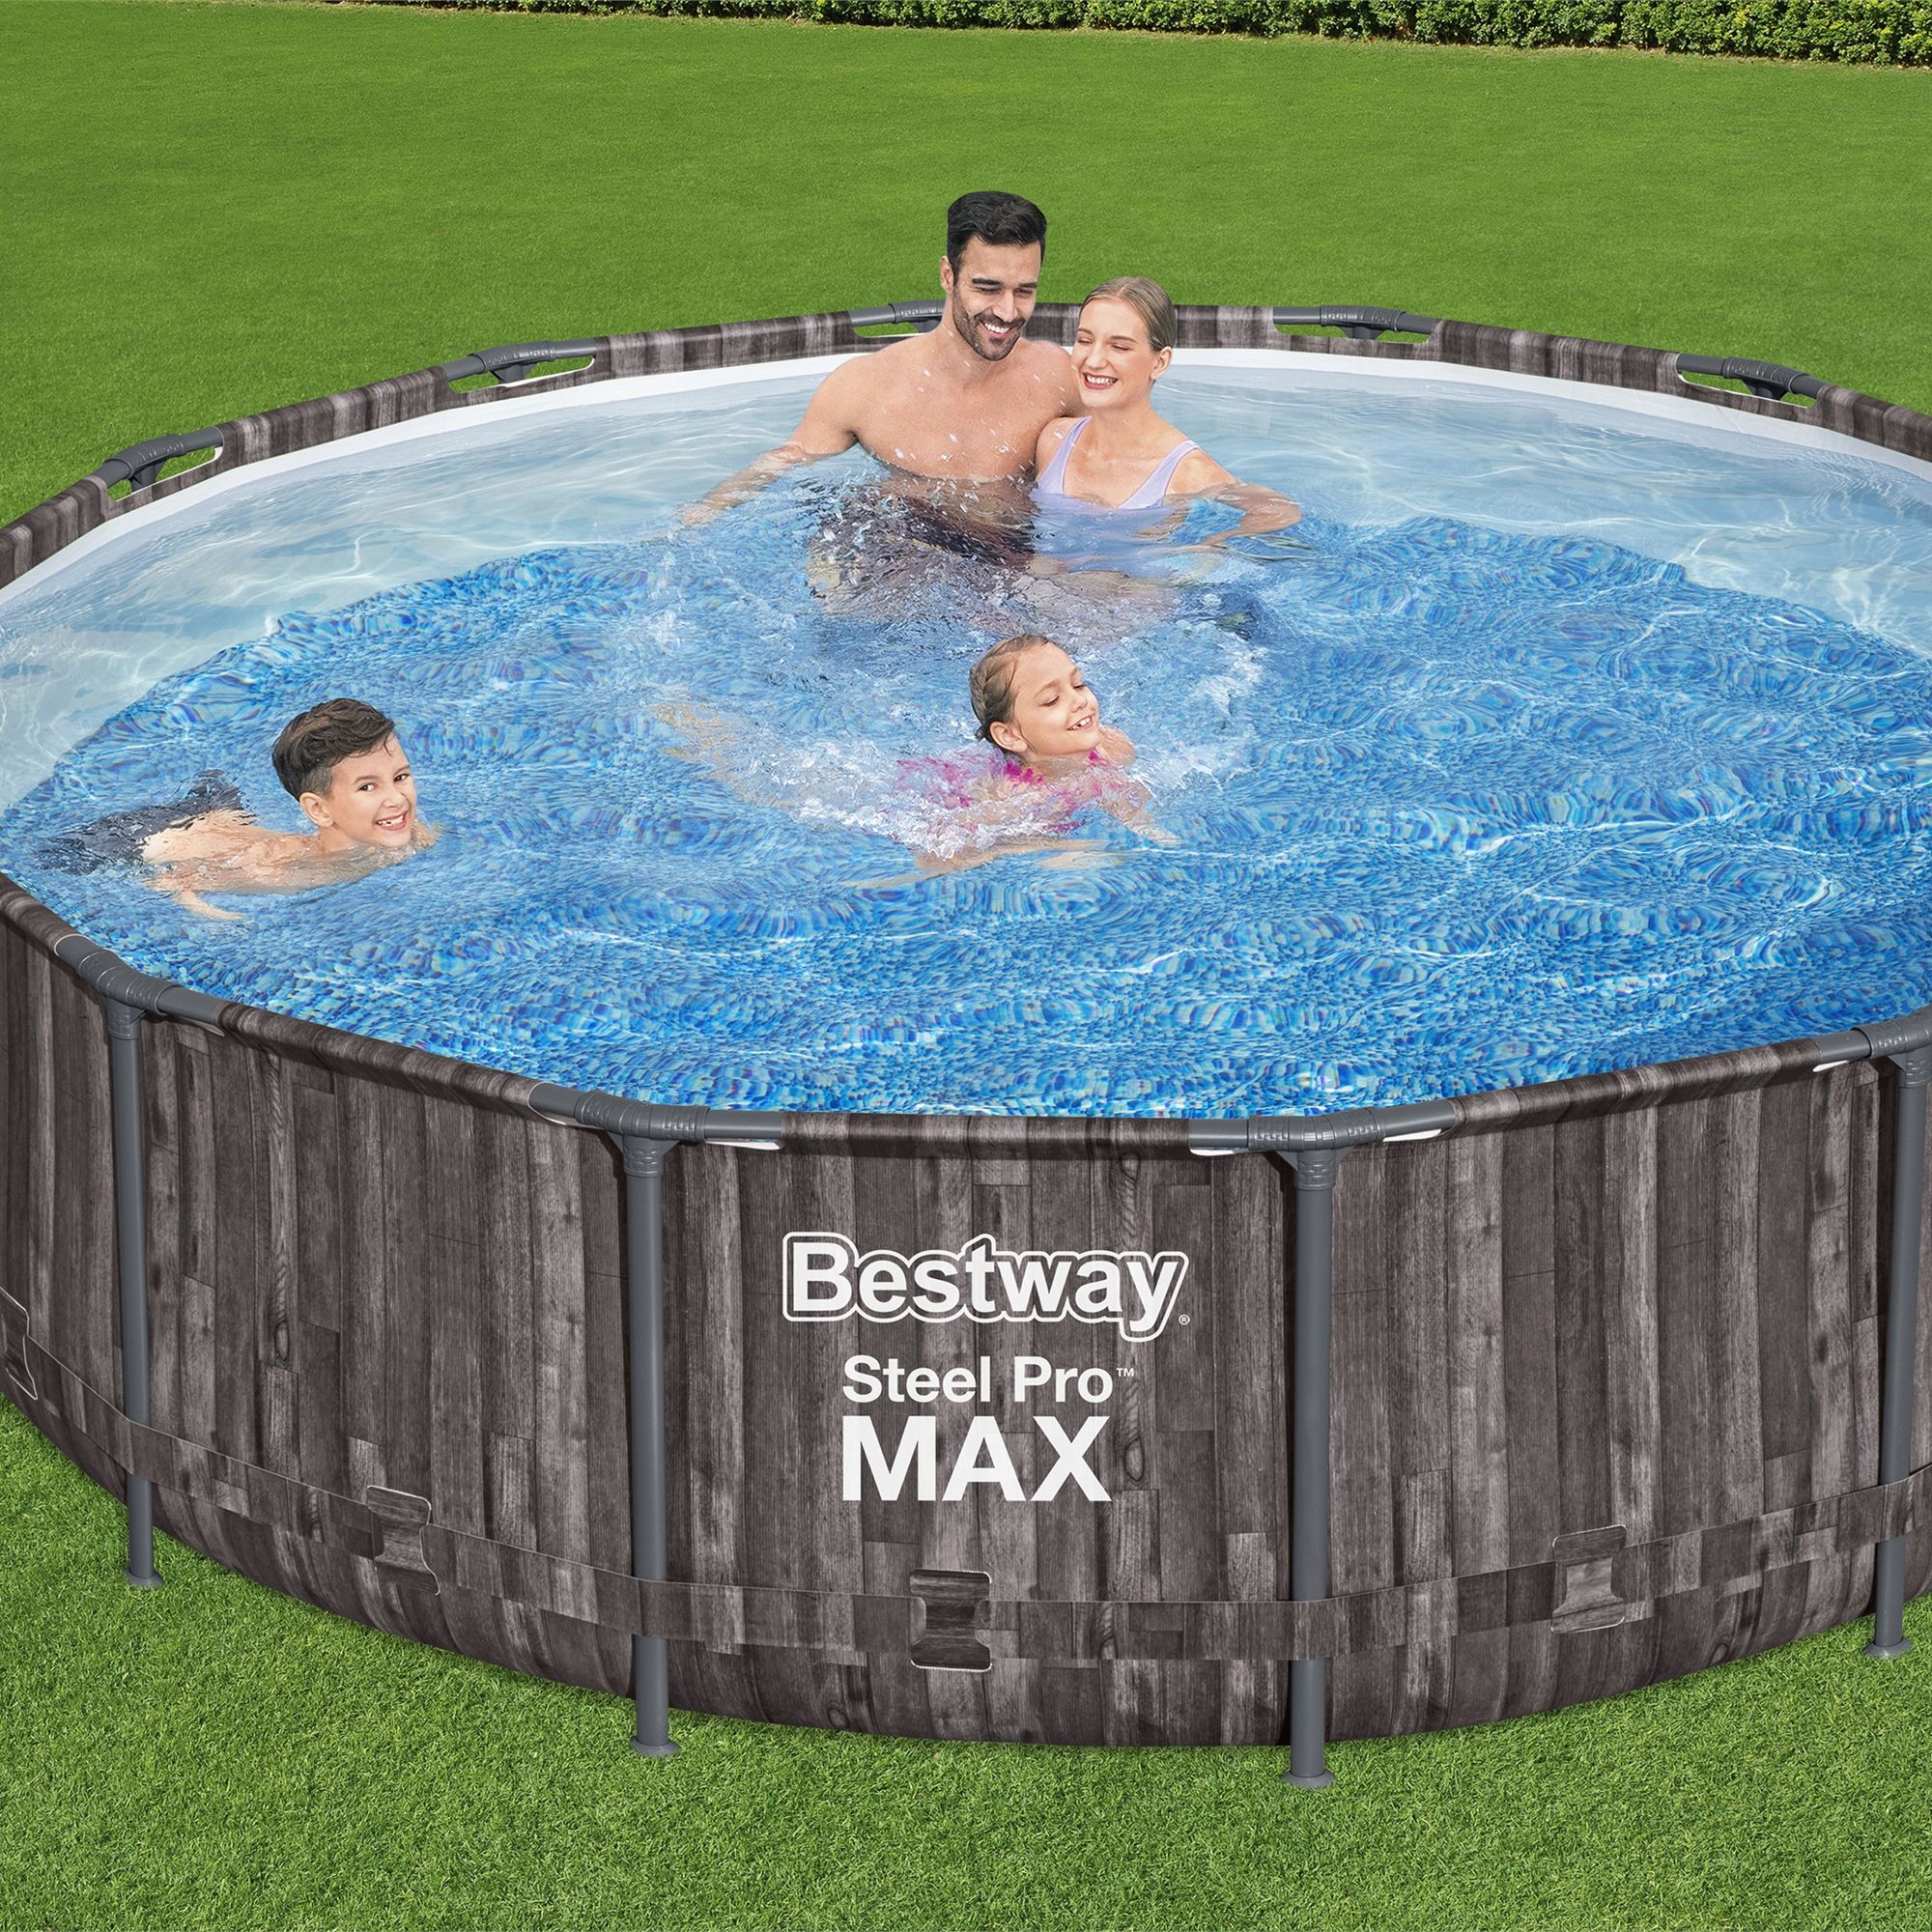 Bestway Steel Pro MAX™ Wood Effect Metal Pool (W) 4.27m x (L) 4.27m